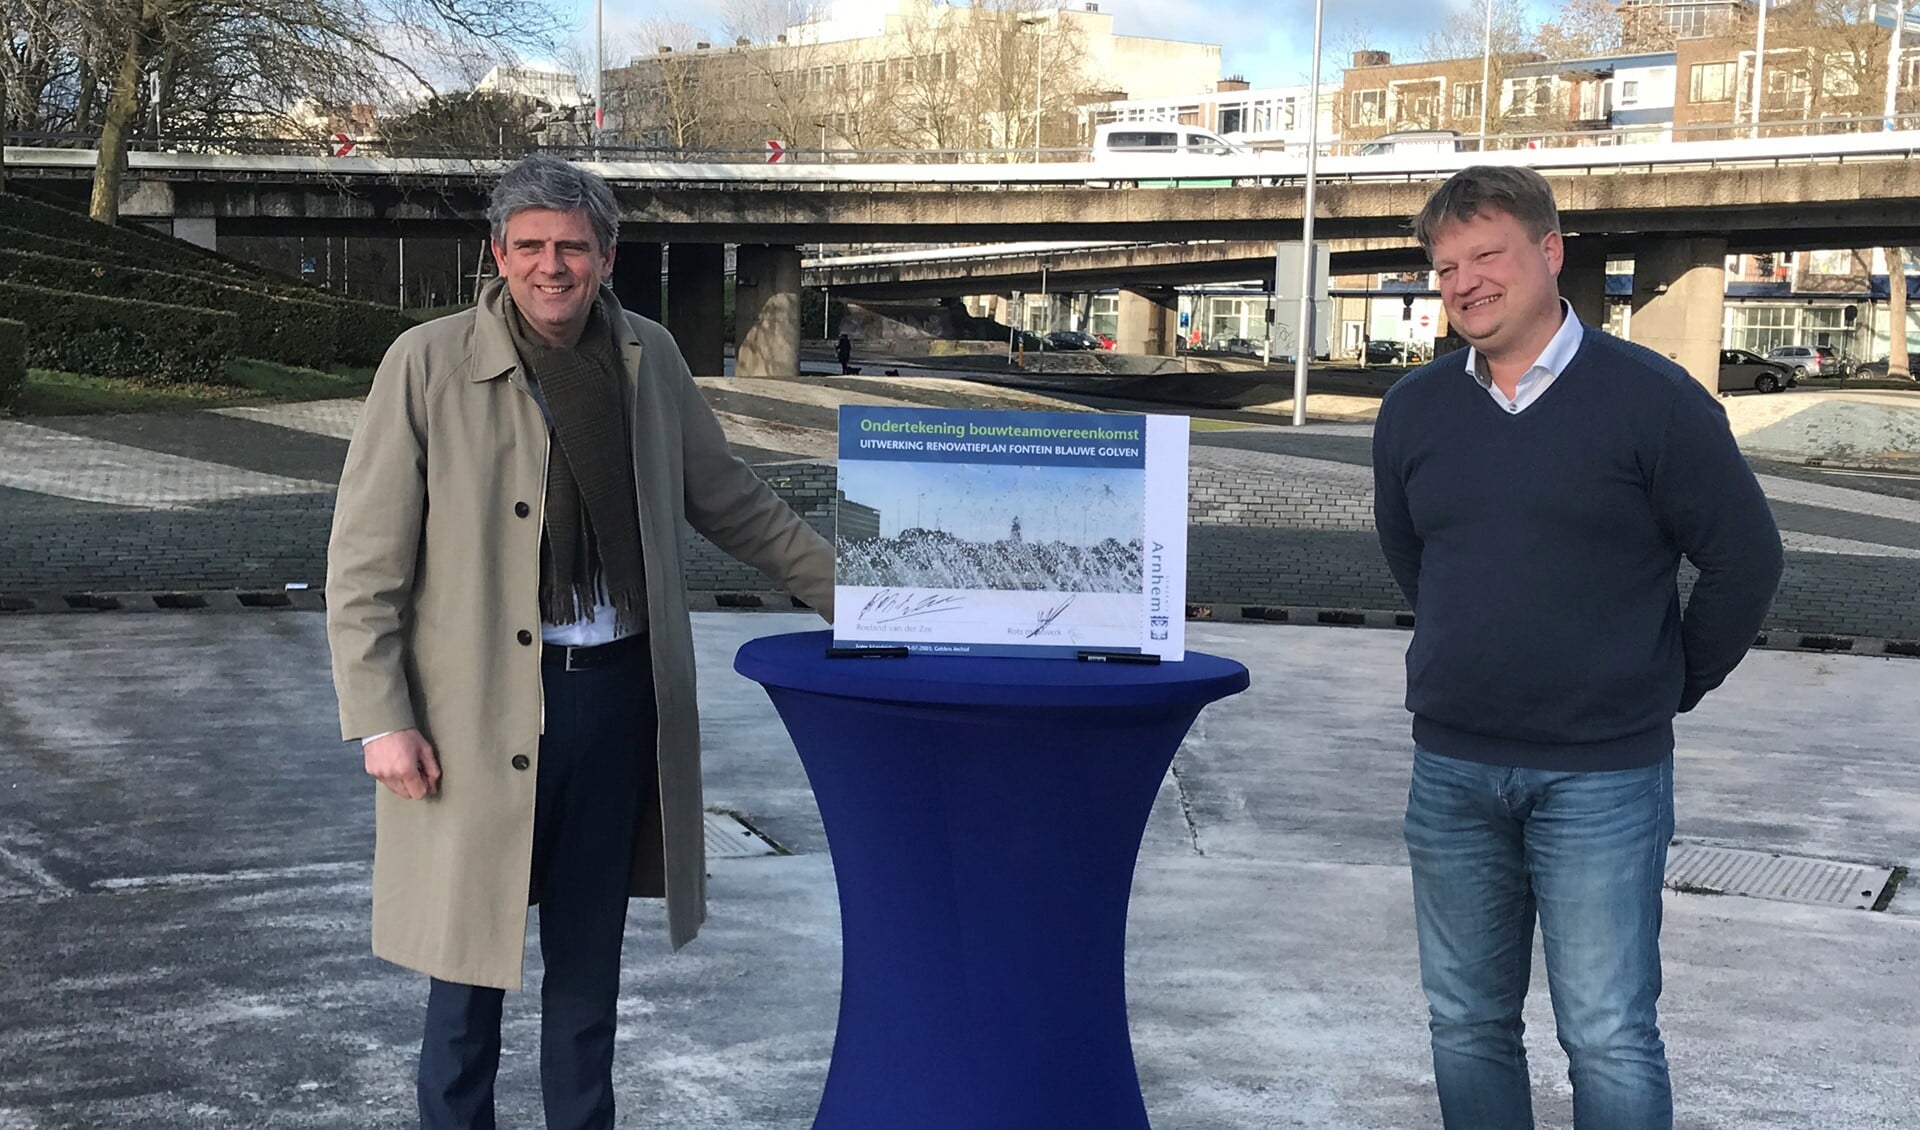 Wethouder Roeland van der Zee (links) en Hugo Rots, directeur Rots Maatwerk ondertekenen de overeenkomst in het midden van de fontein op de Blauwe Golven (foto: Gemeente Arnhem). 